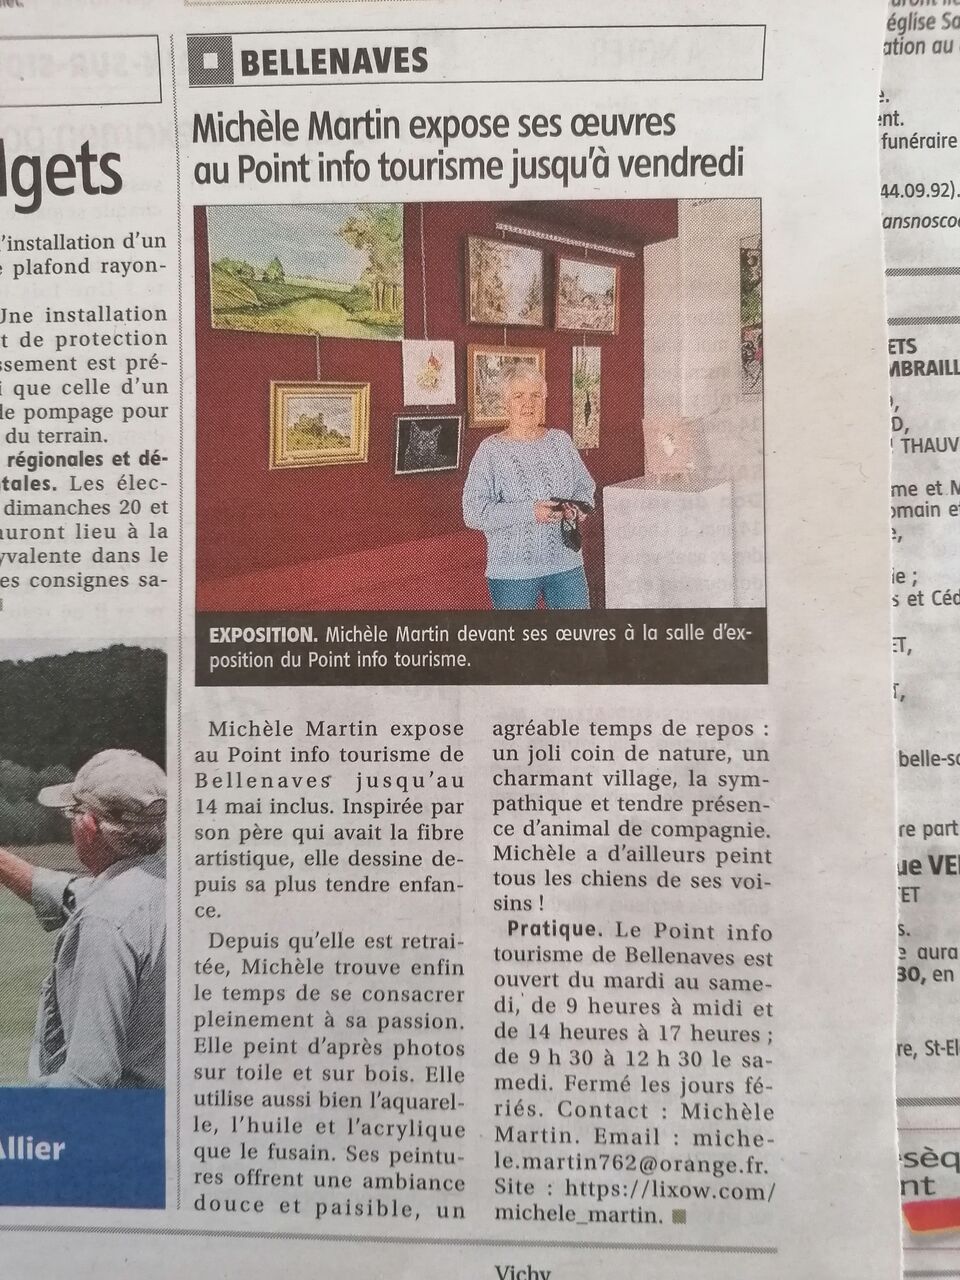 Michele martin article de La Montagne edition Bellenaves.